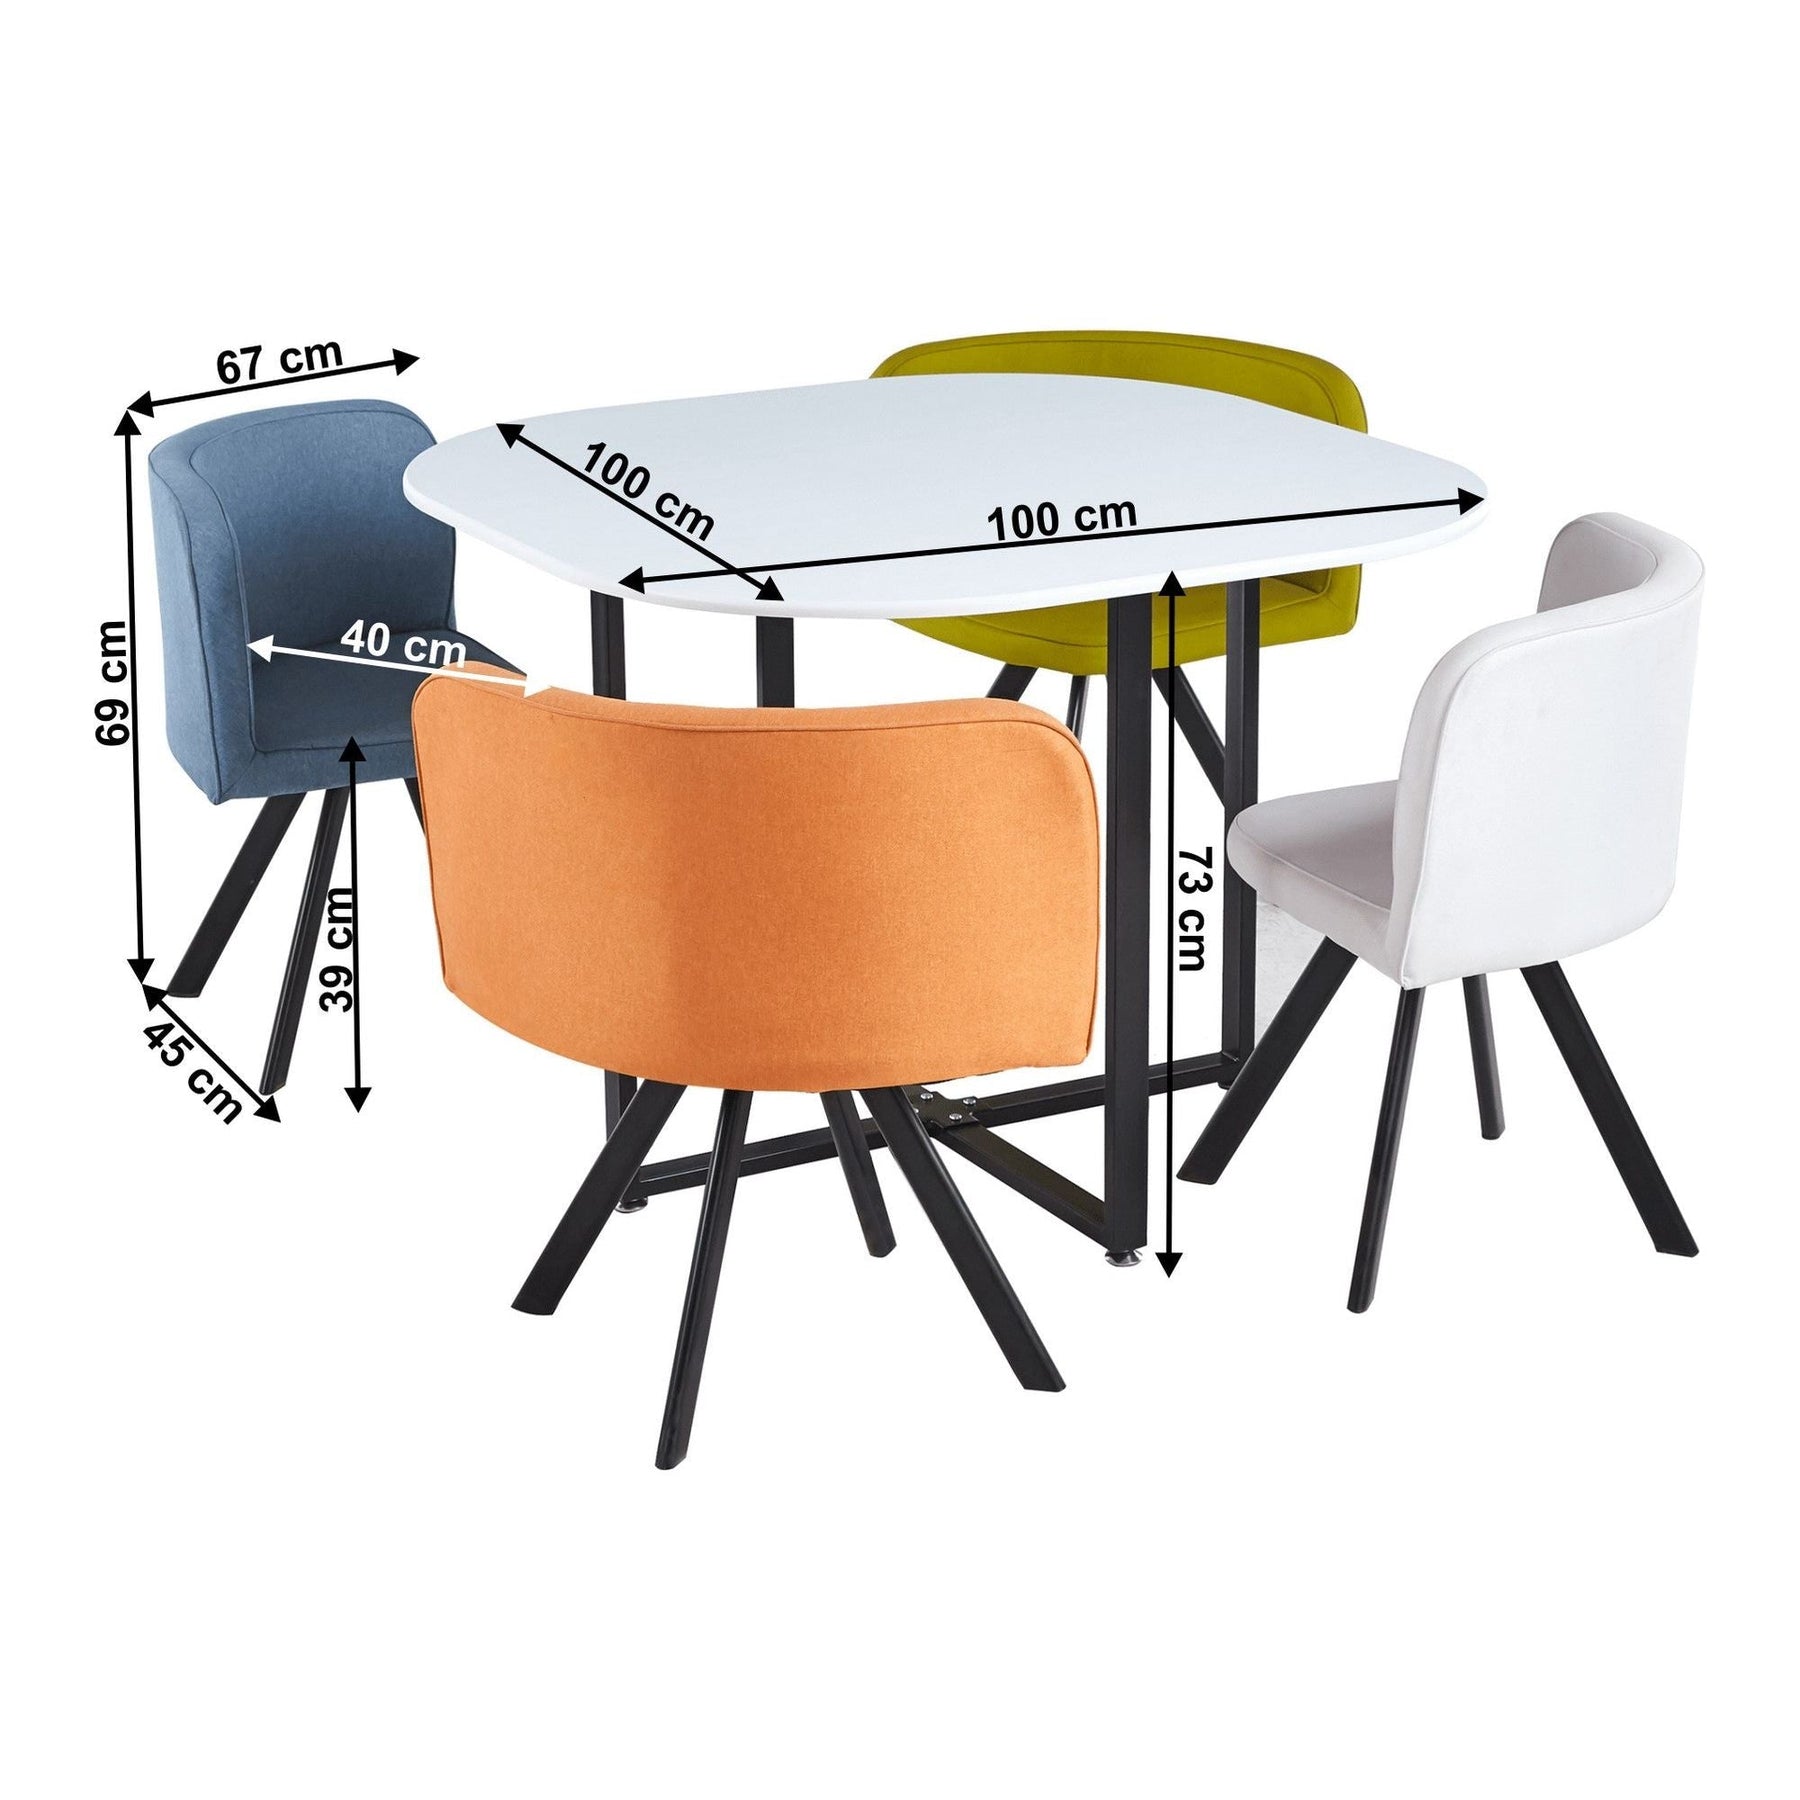 Set masa cu 4 scaune BEVIS NEW, stofa clasica/metal, multicolor